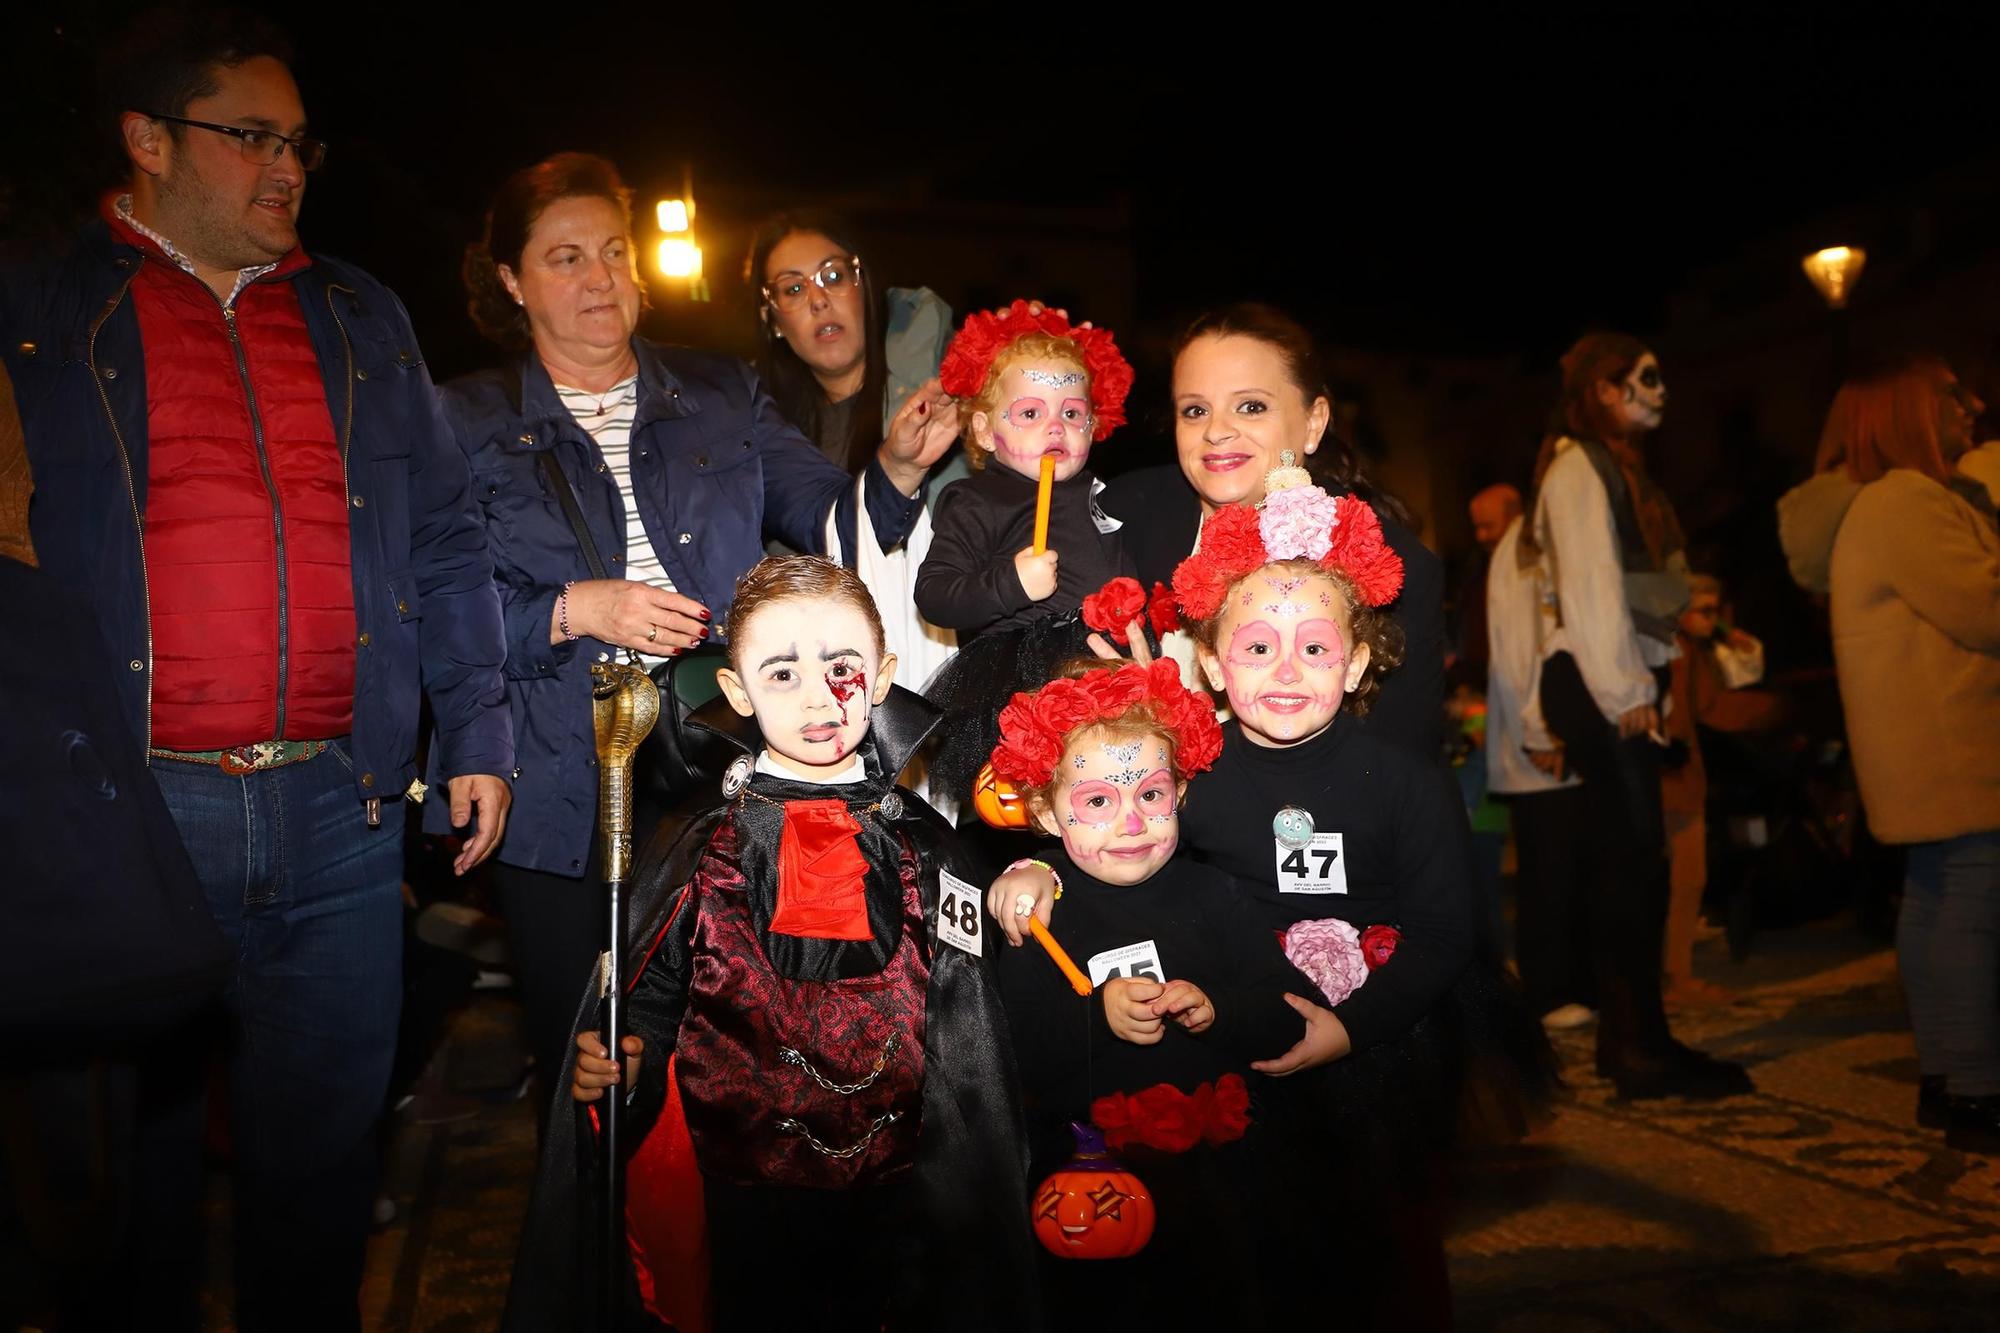 La noche de Halloween en Córdoba, en imágenes